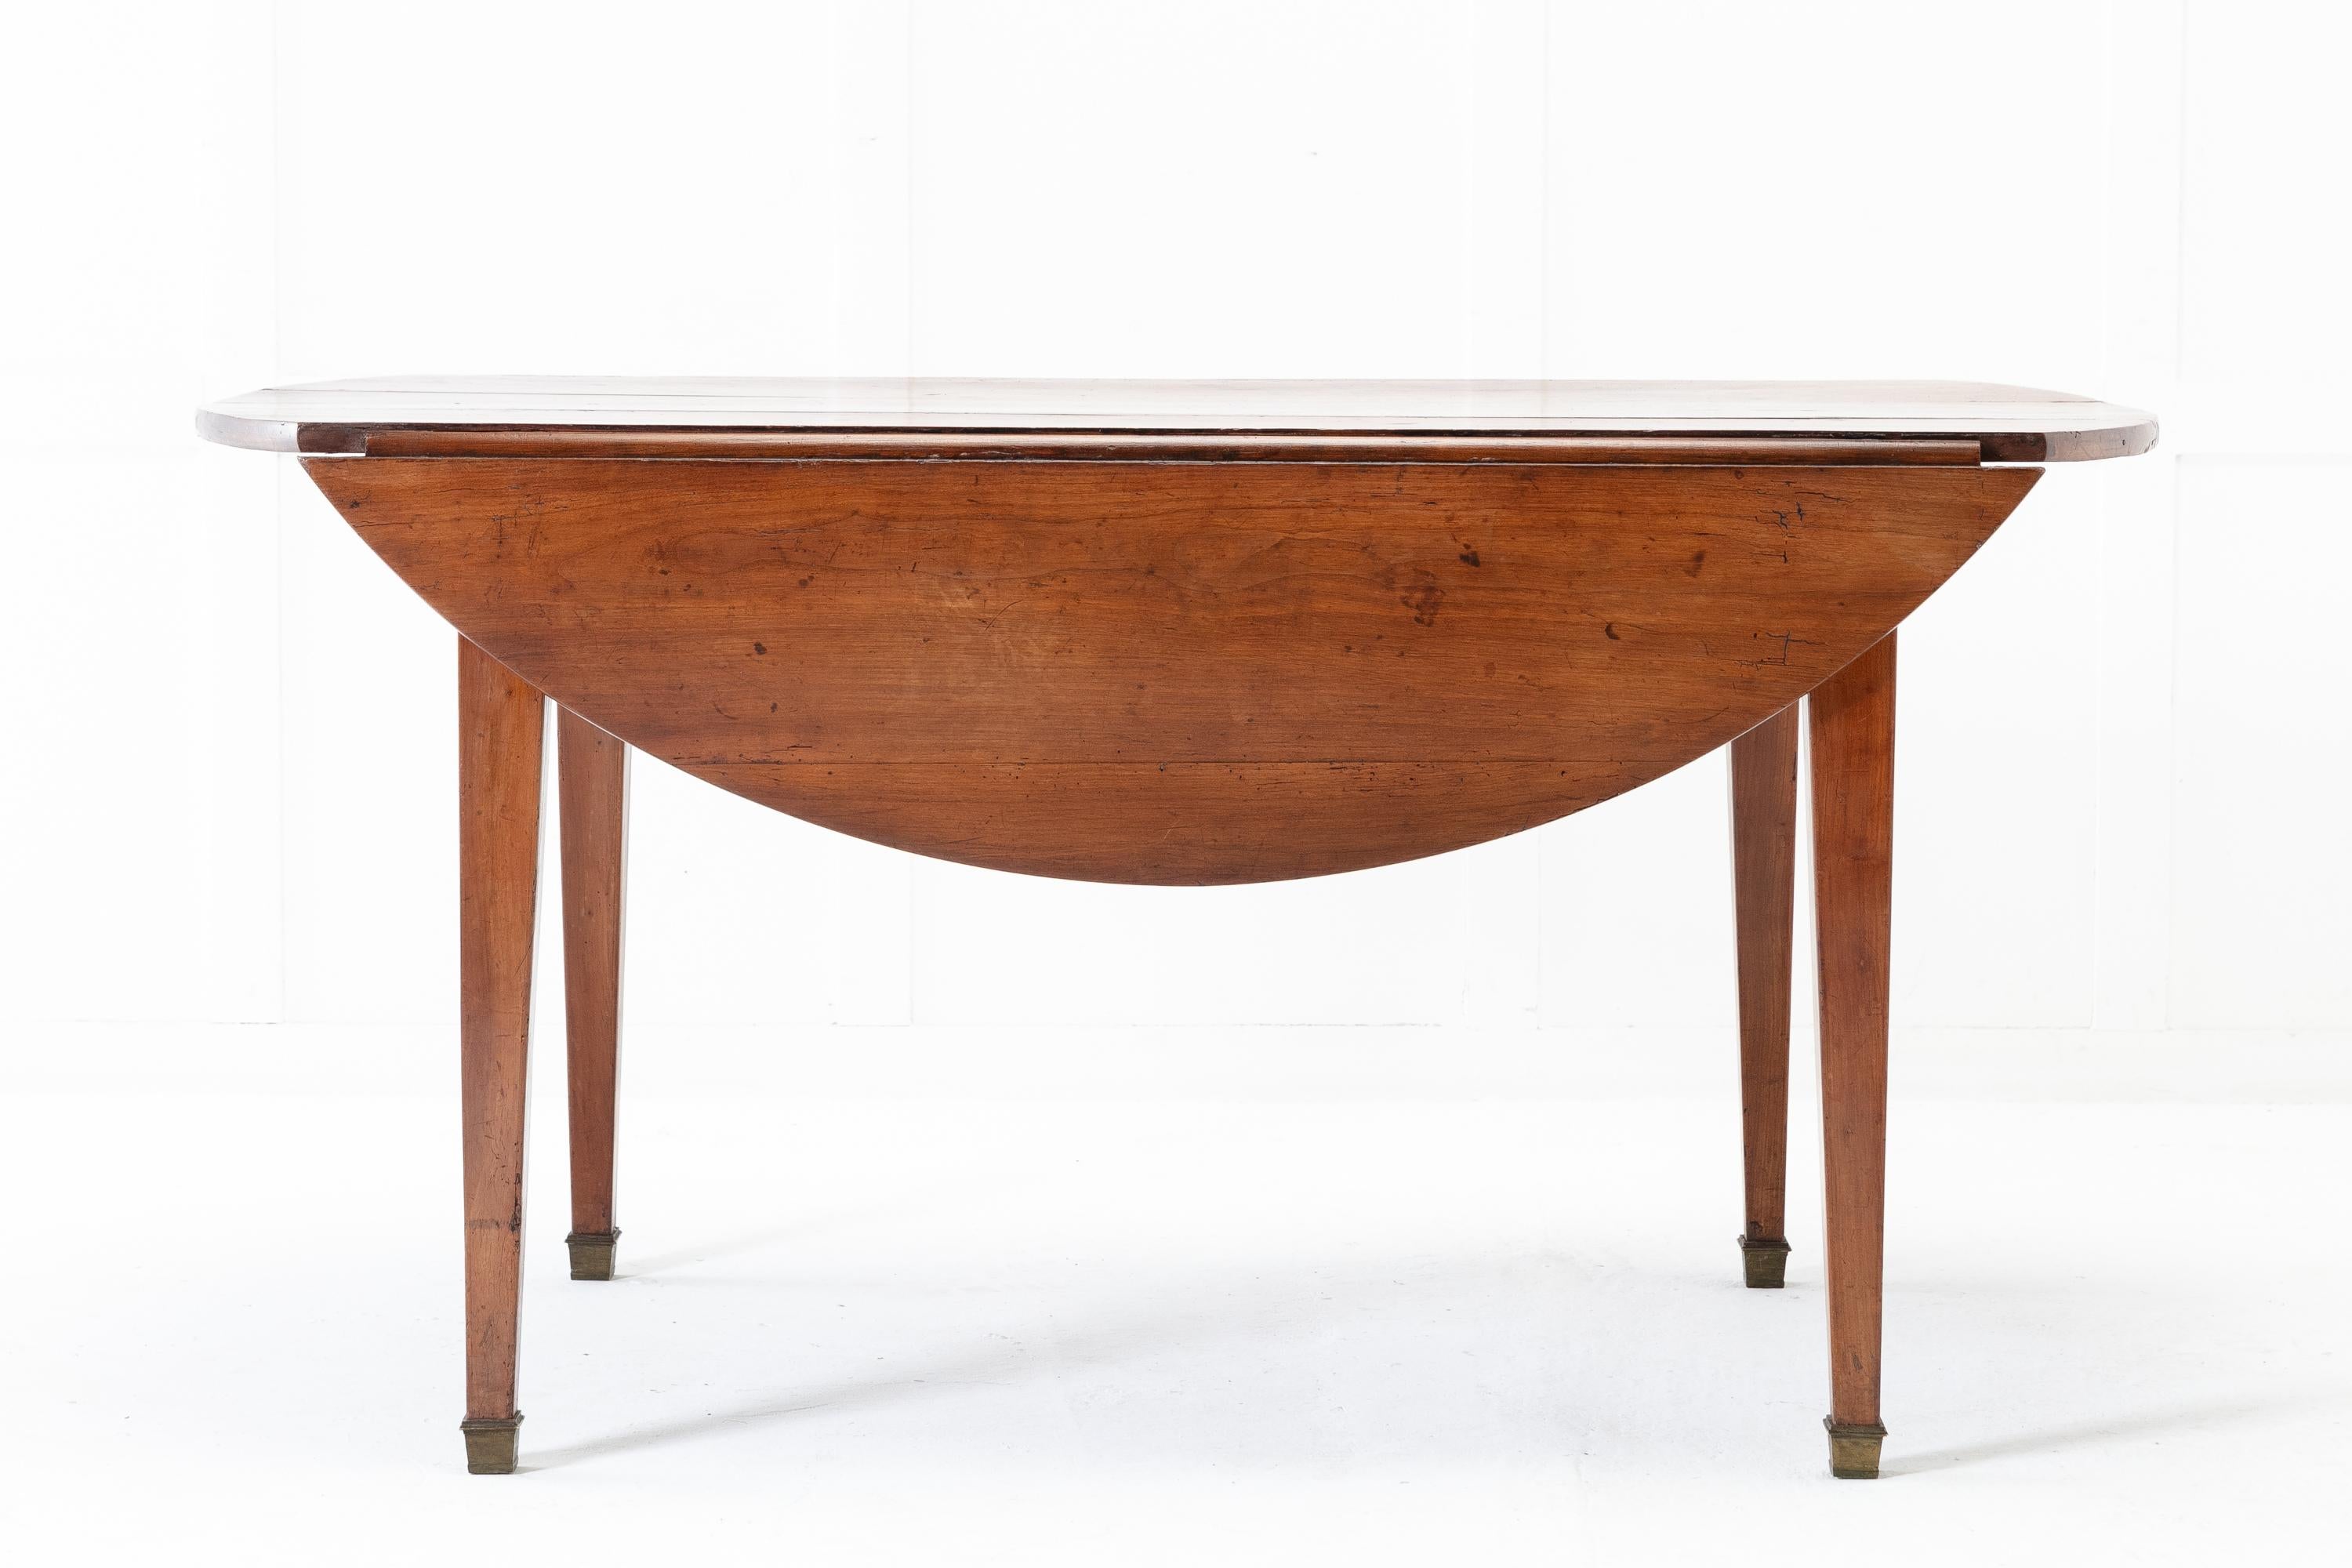 französischer Esstisch aus Kirschbaumholz aus dem 19. Jahrhundert mit ovaler Form, wenn er ausgezogen ist, mit Klappblättern auf jeder Seite. Erweitert um die beiden Ausziehplatten, die durch Auszüge unterstützt werden, entsteht ein Tisch, an dem